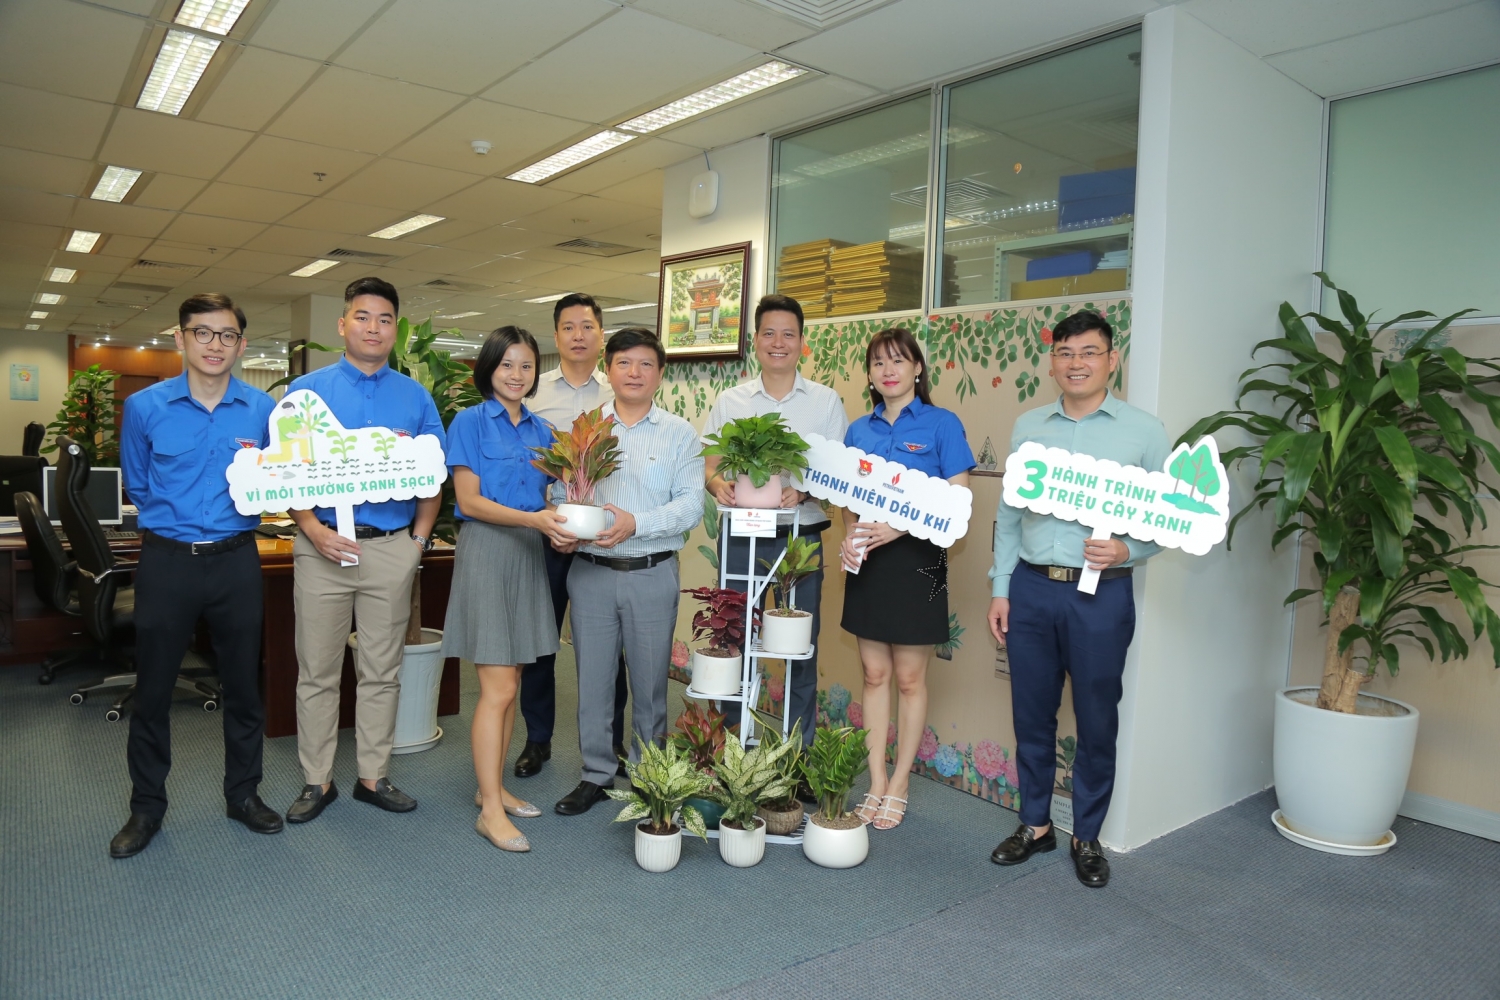 Tuổi trẻ Cơ quan Tập đoàn hưởng ứng Chương trình trồng 3 triệu cây xanh